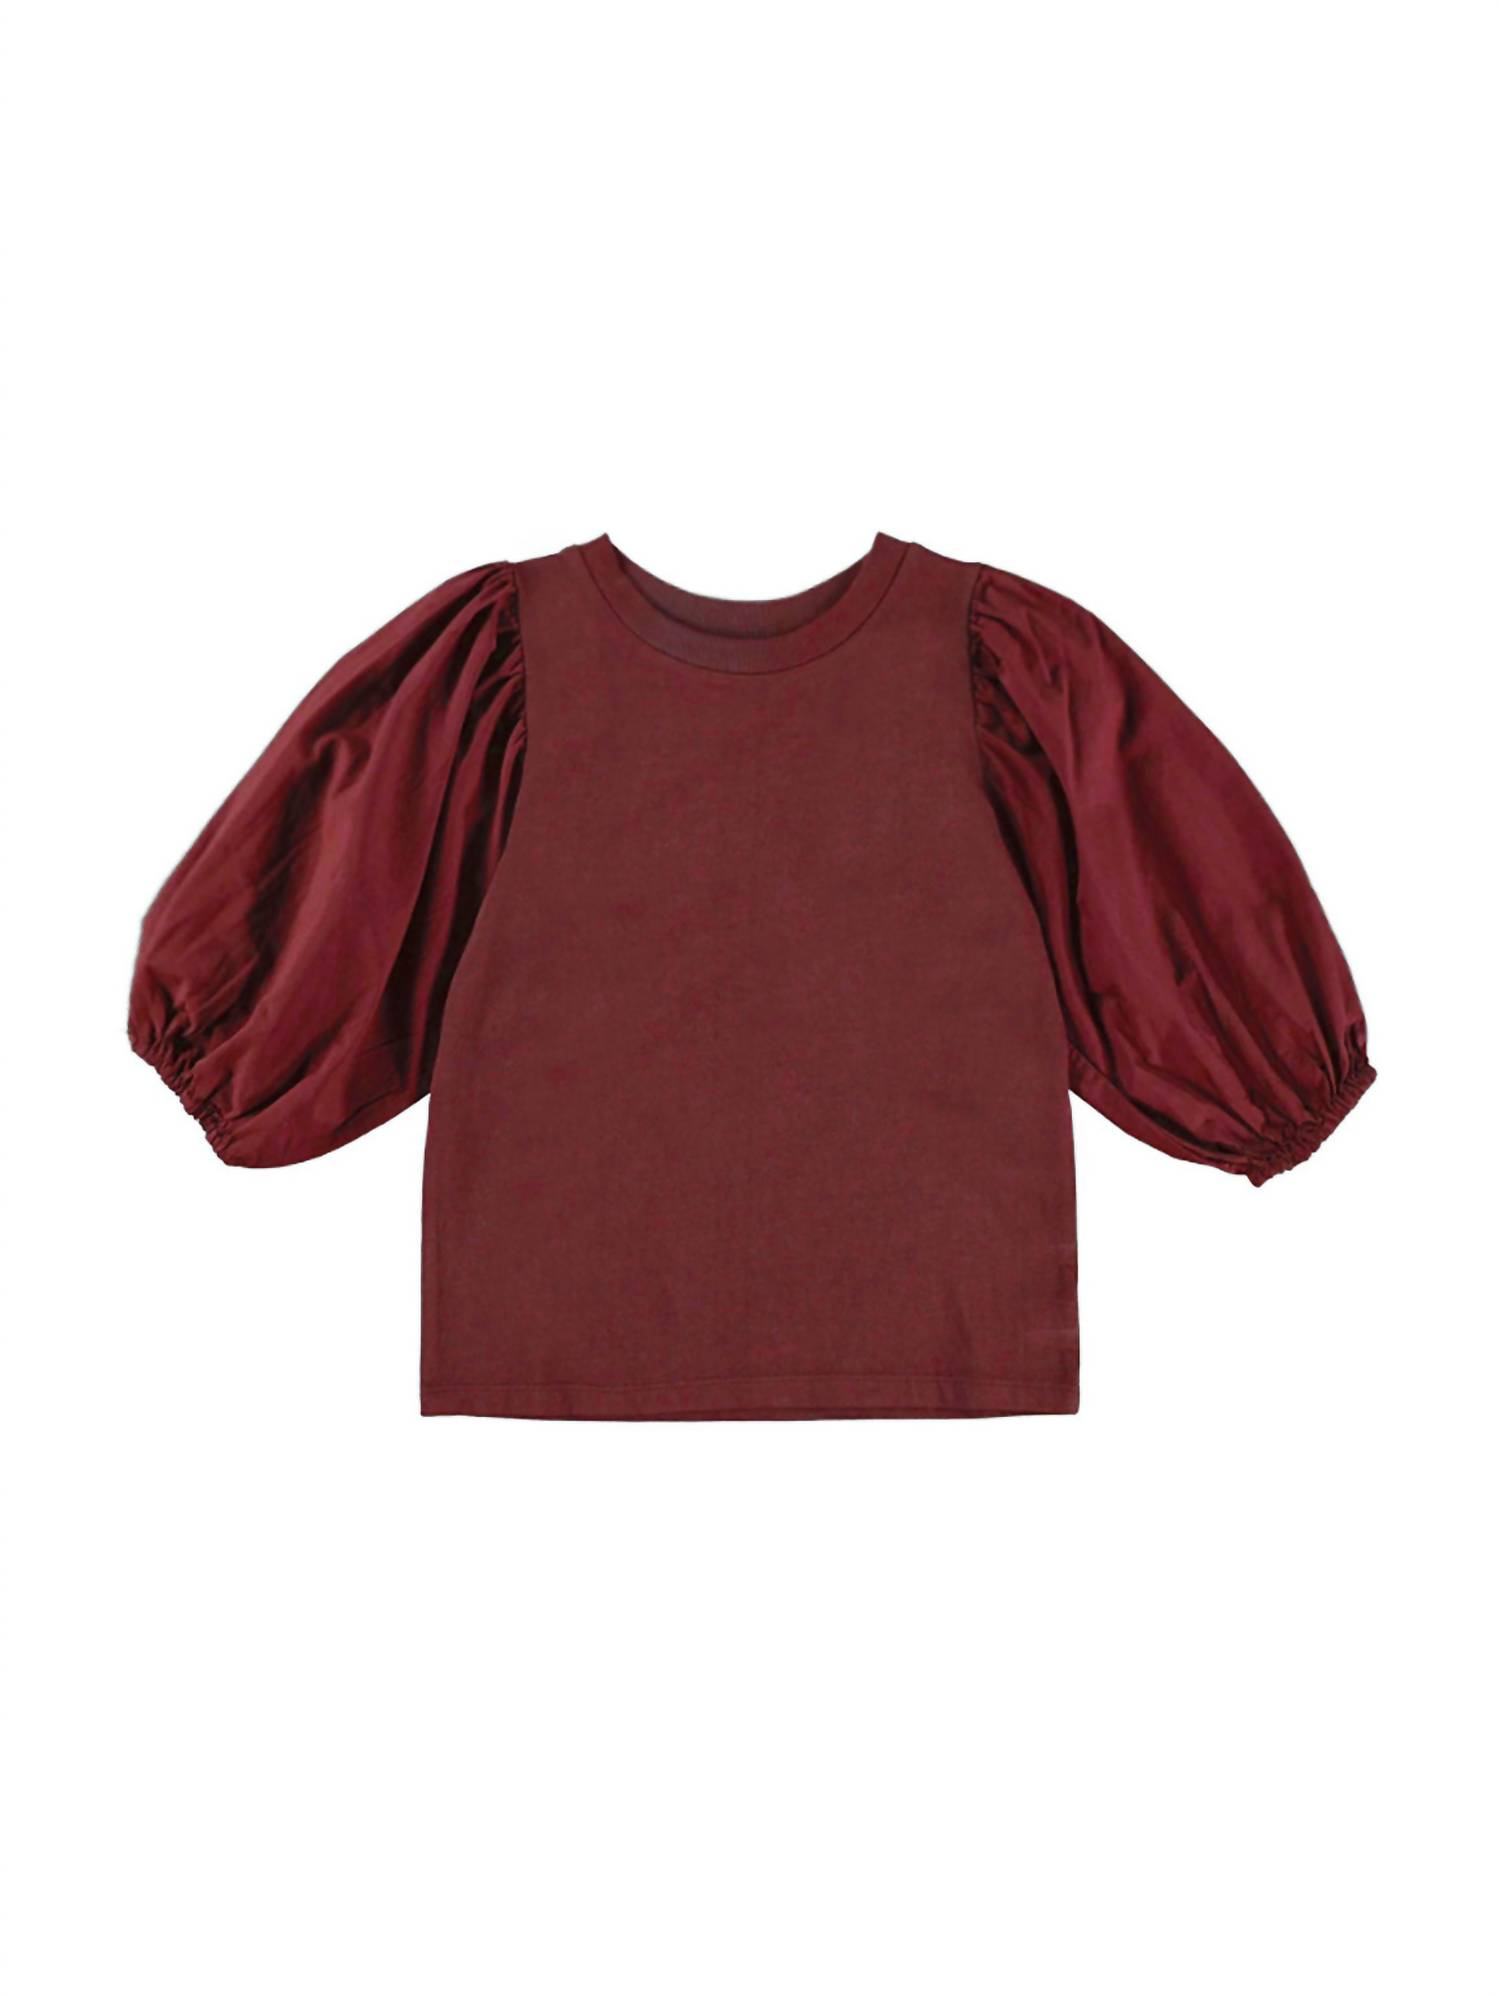 Dl1961 - Kids&apos; Girl&apos;s Kayla Shirt In Ruby